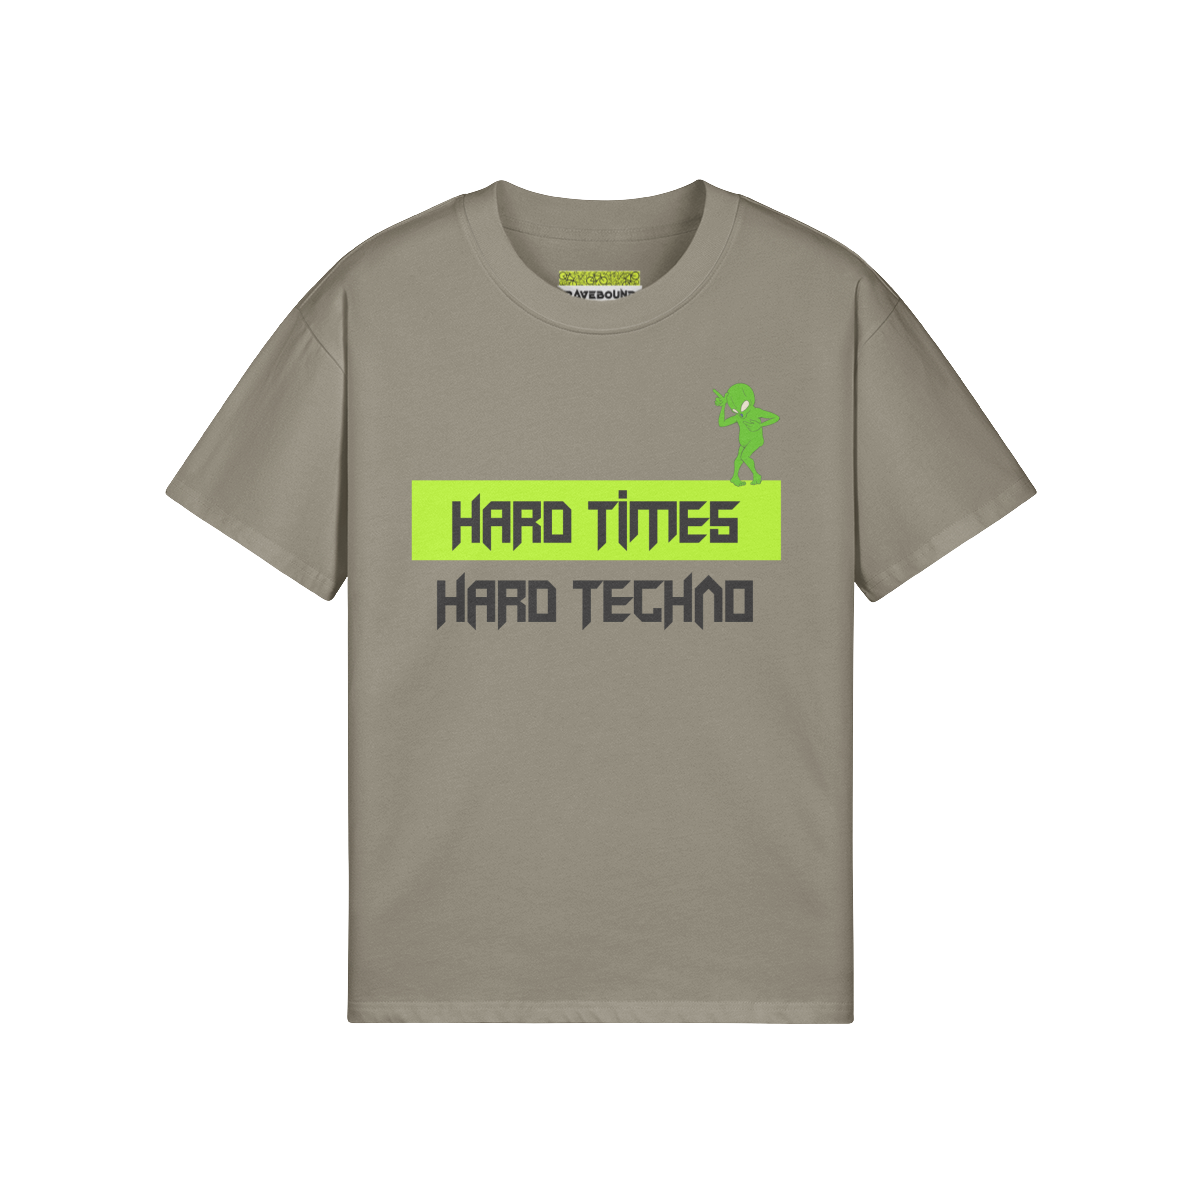 HARD TIMES HARD TECHNO - Unisex Oversized T-shirt